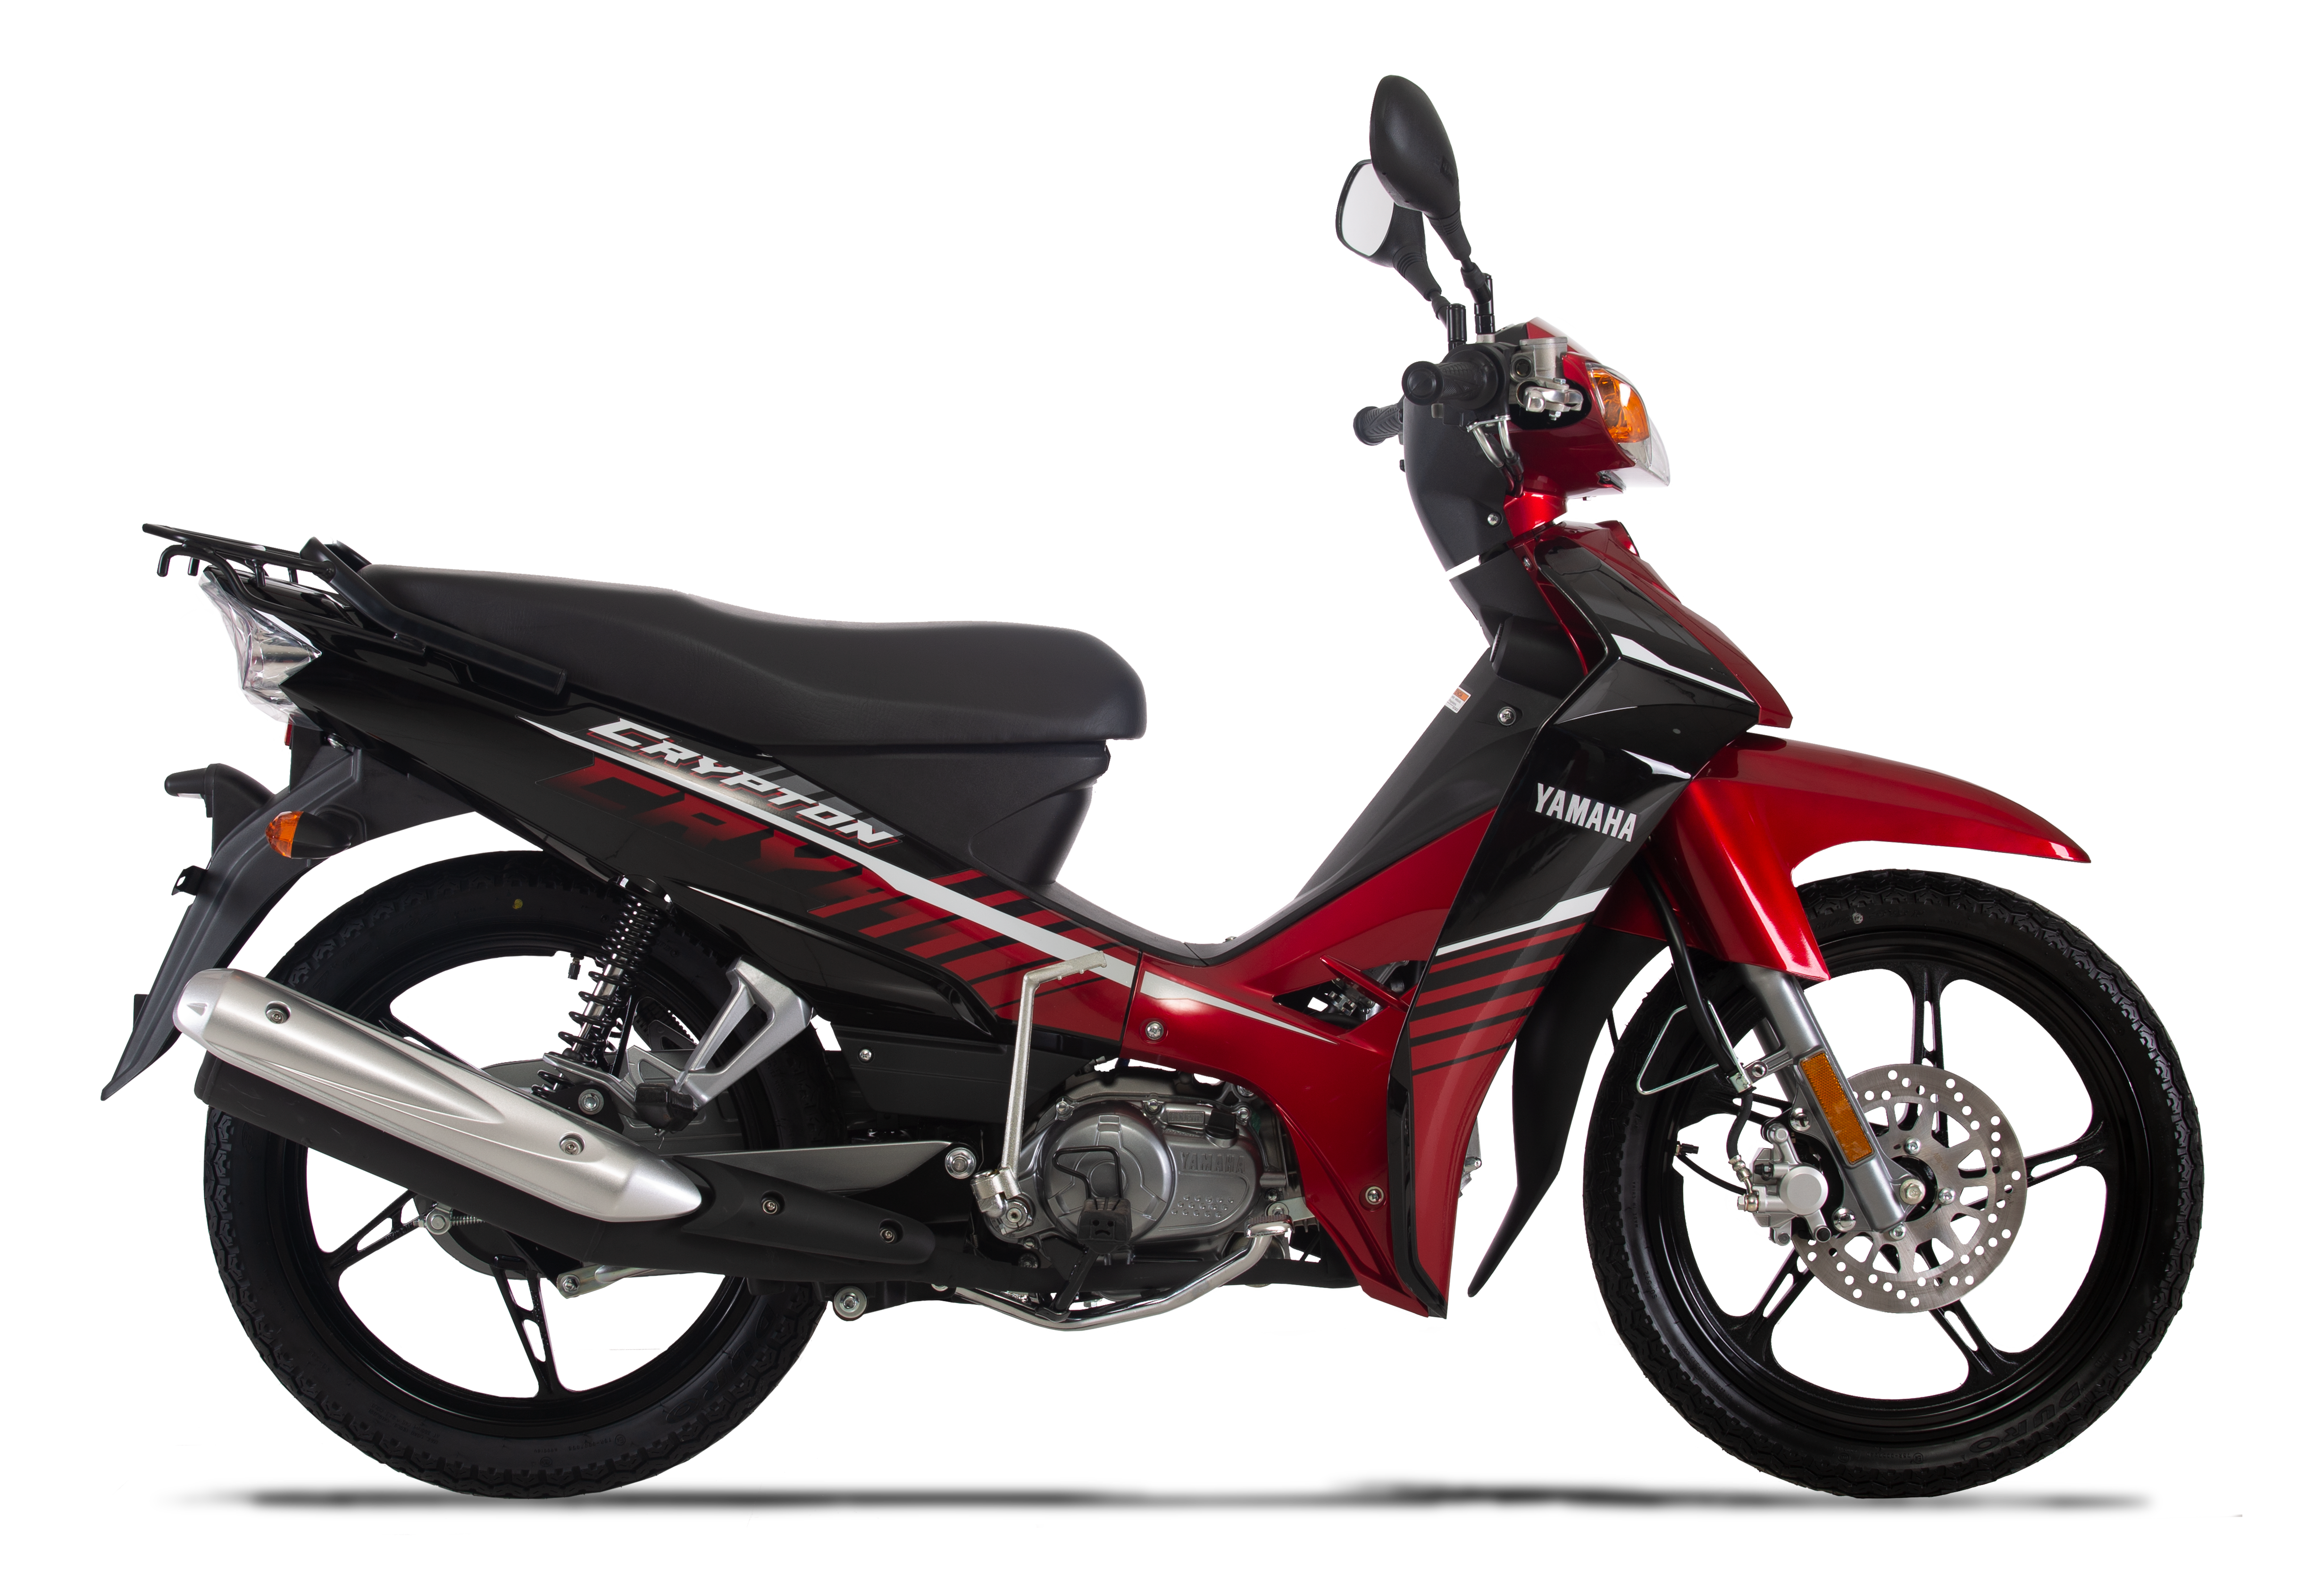  Motos  Yamaha  Per  Cat logo y Precios Somos Moto  Per 